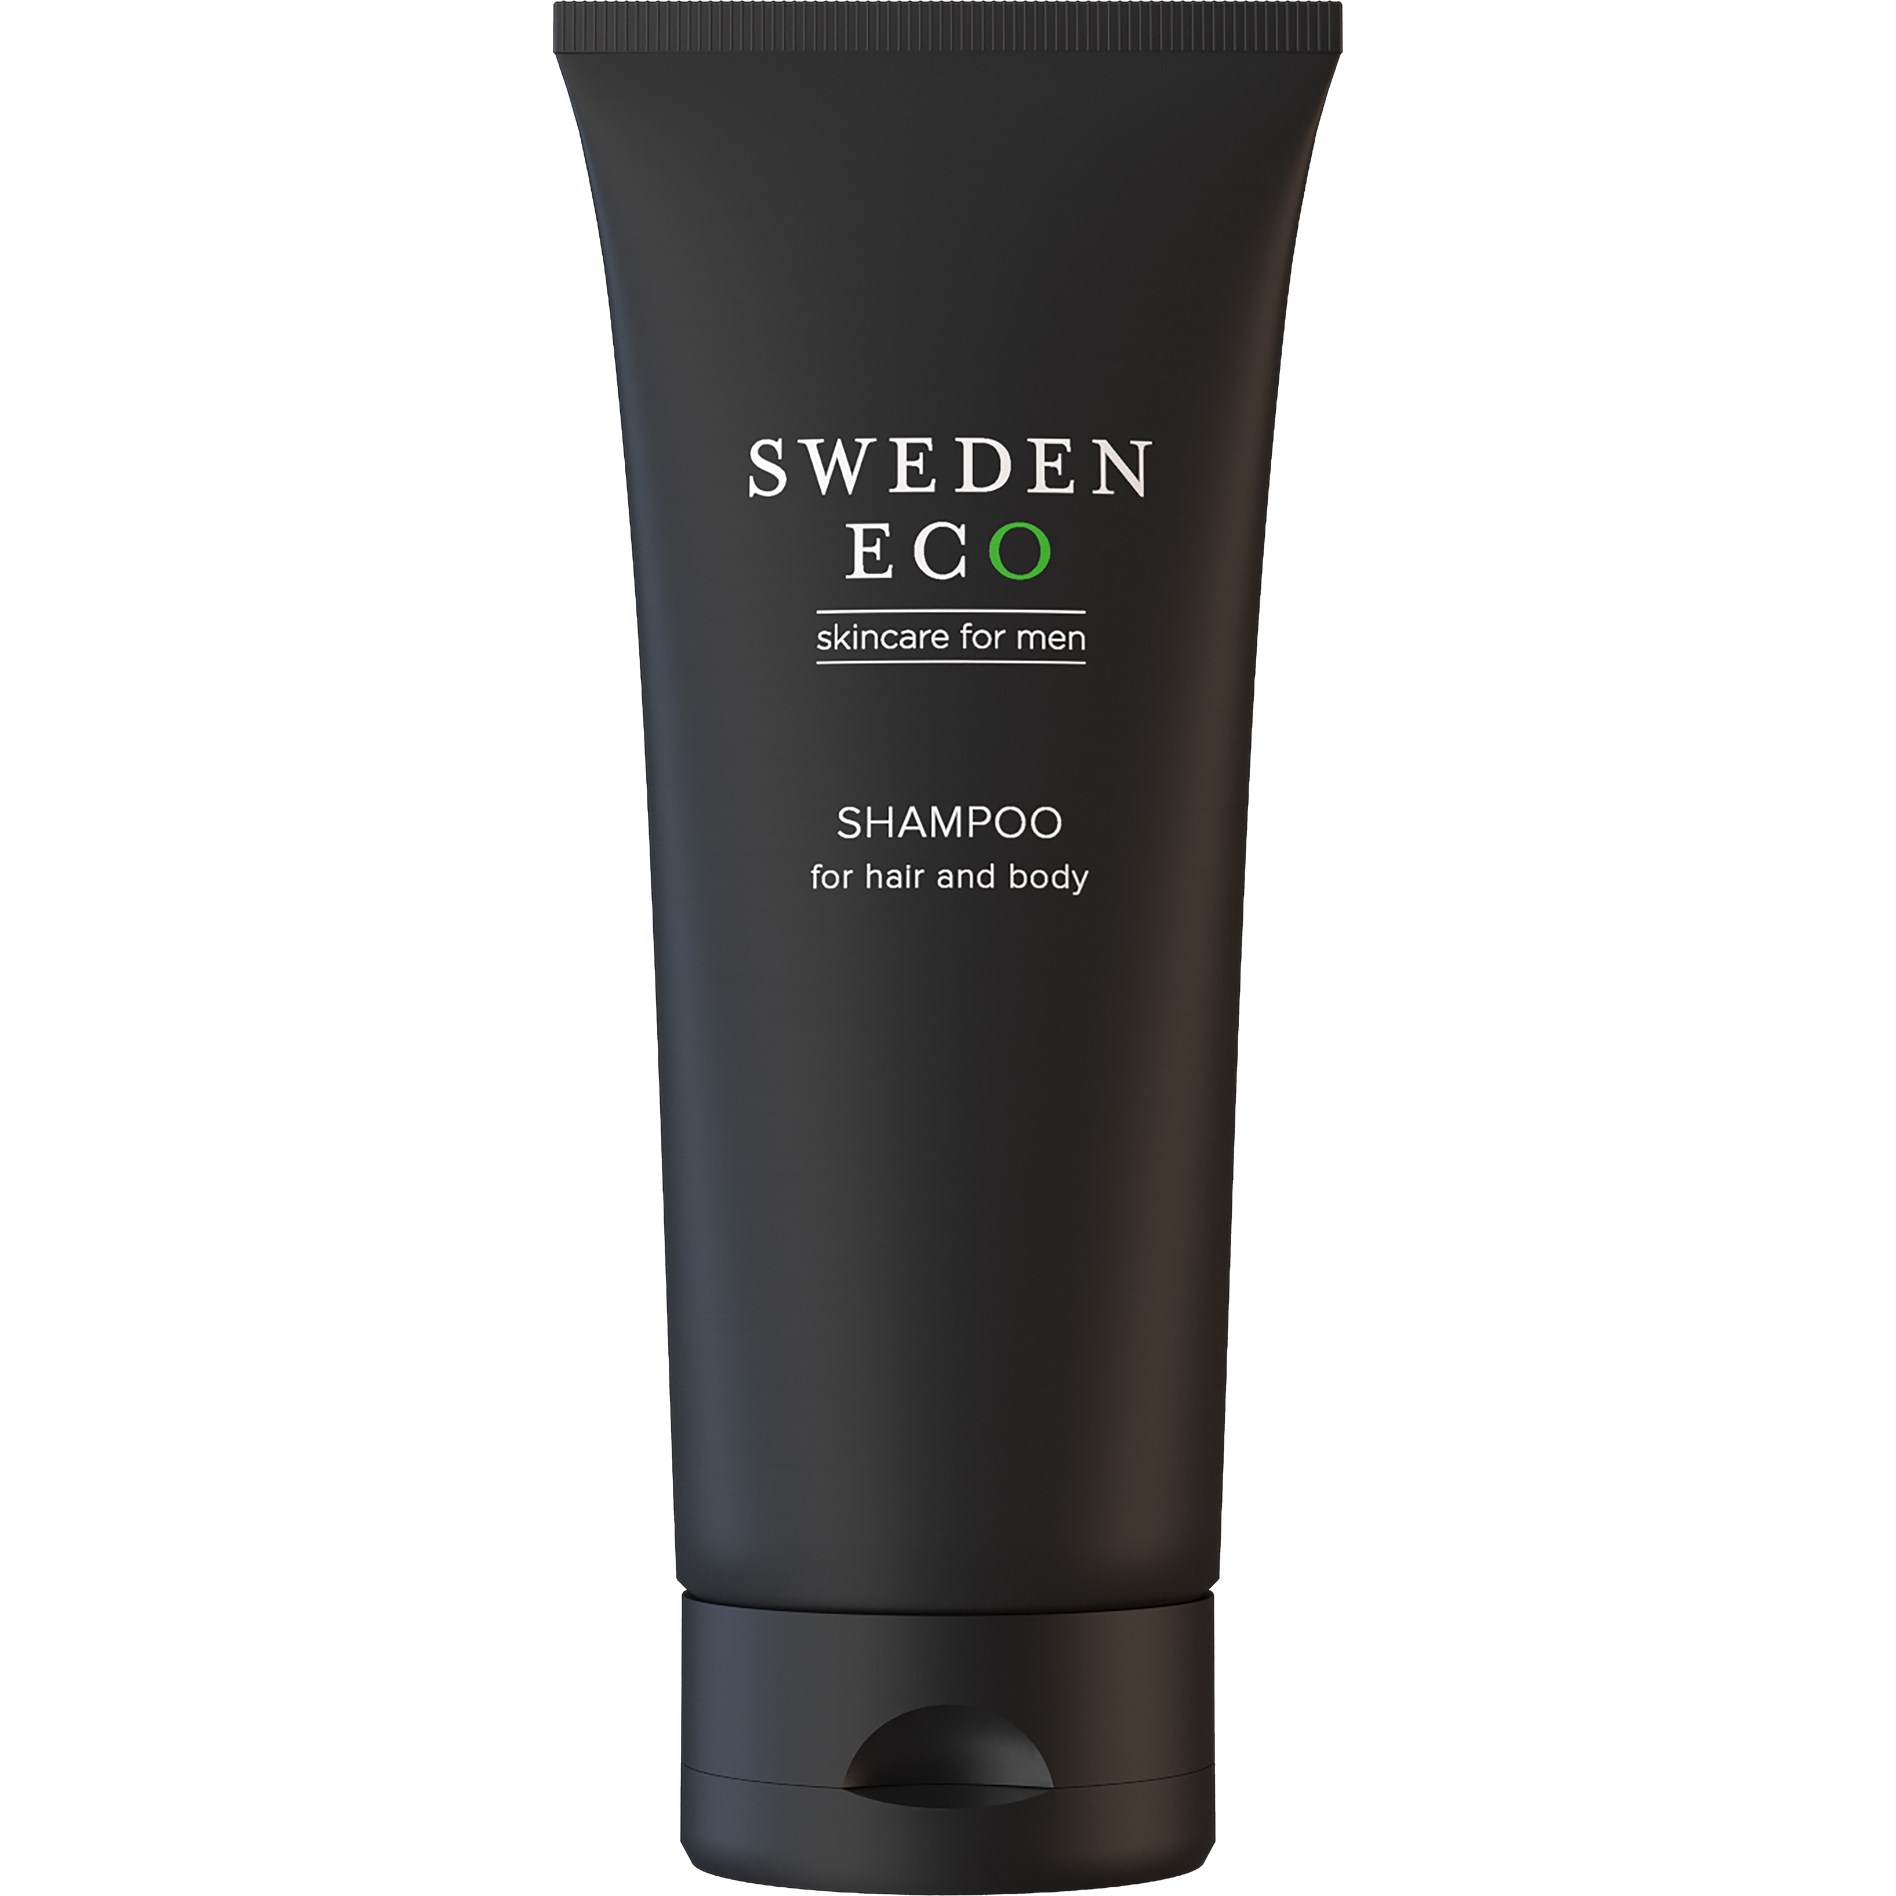 Sweden Eco Skincare For Men Shampoo Hair & Body 200 ml